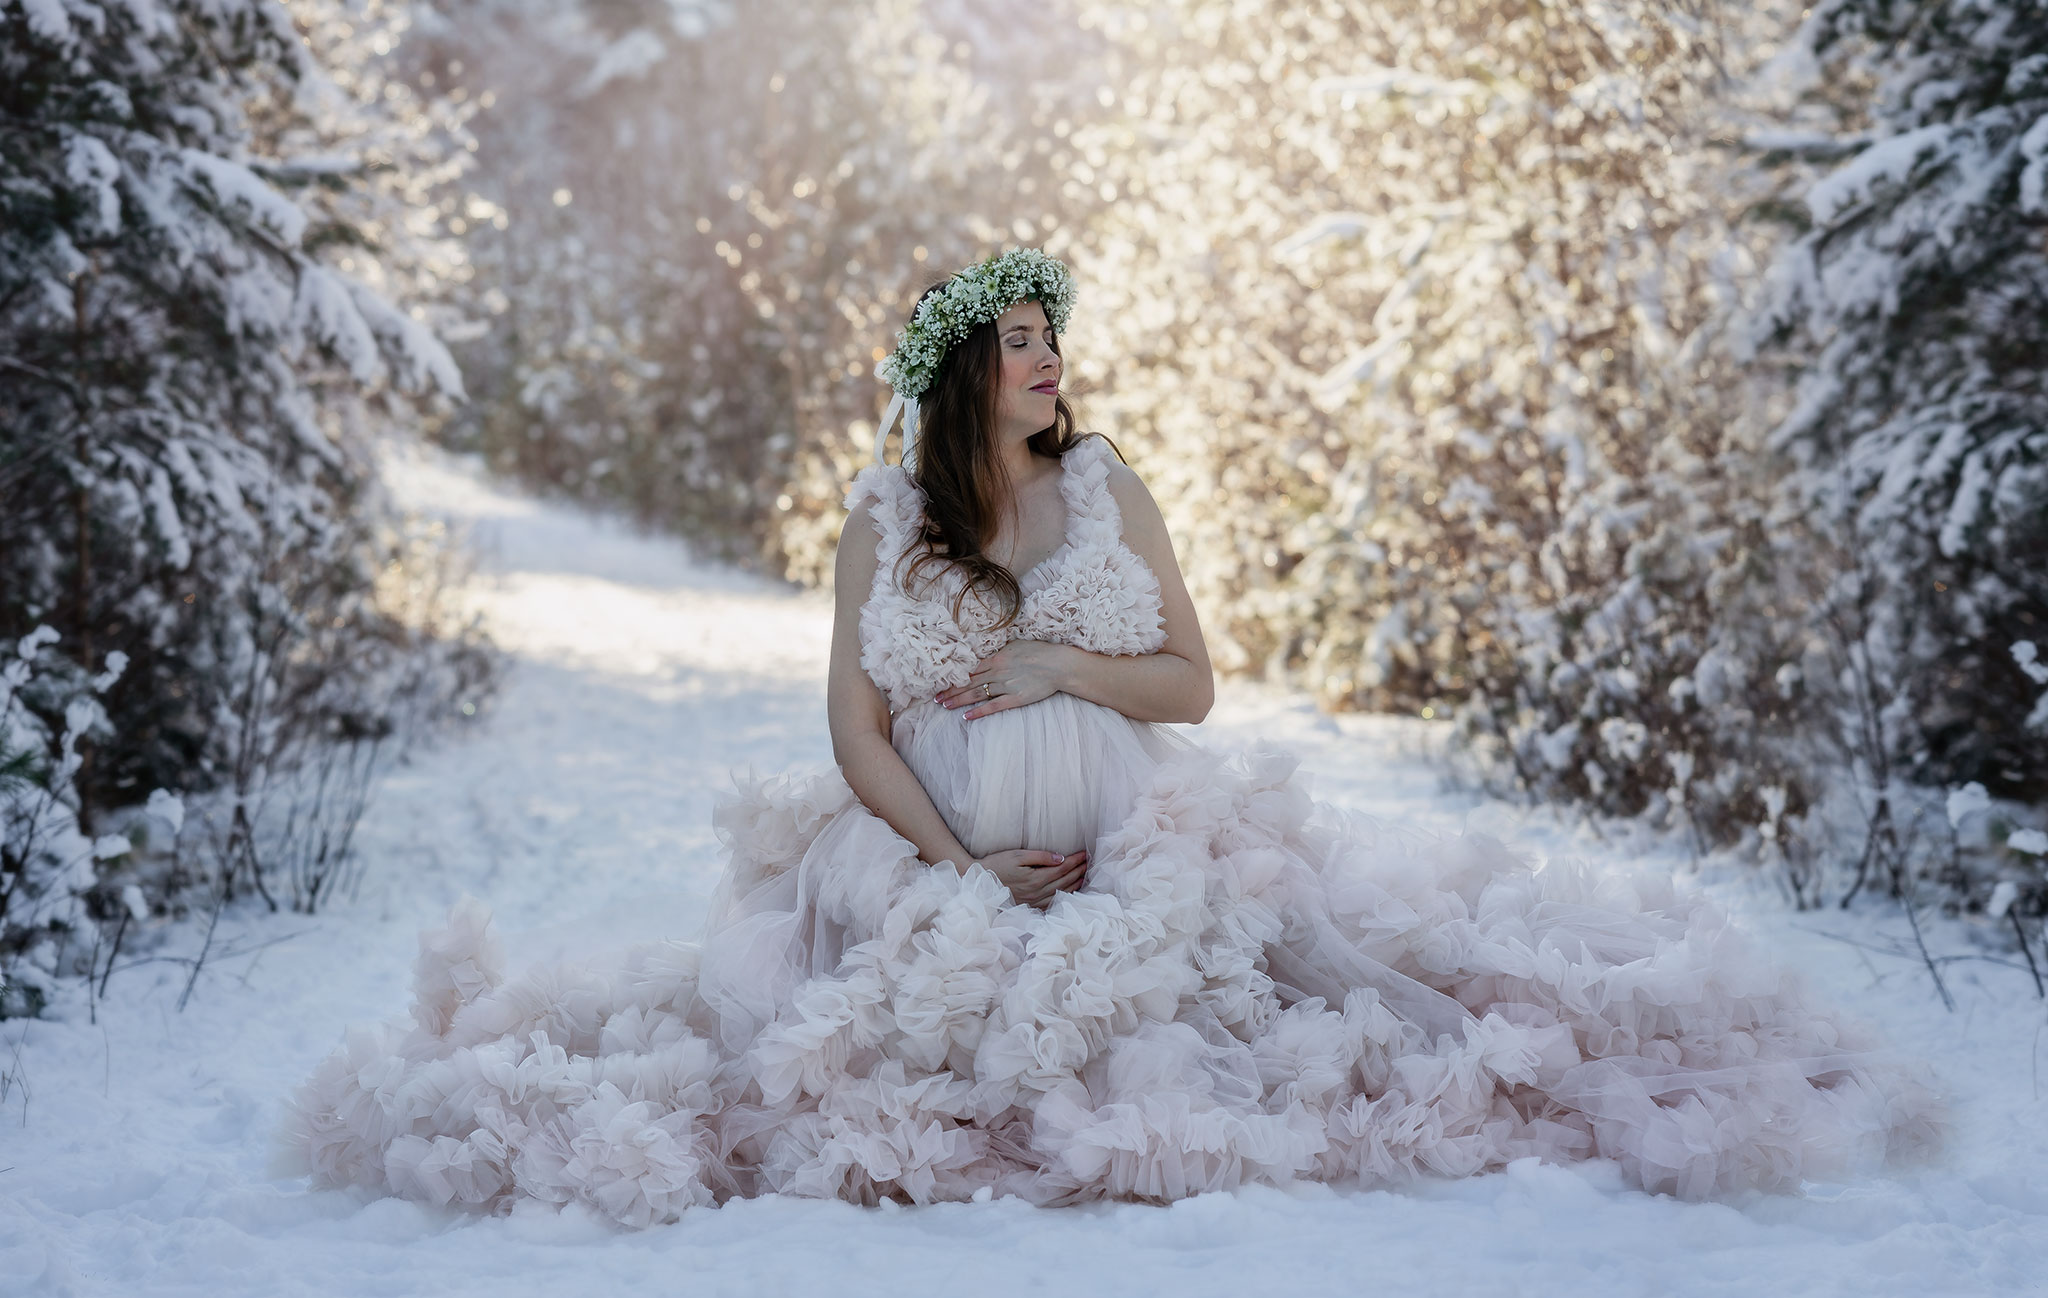 You are currently viewing Vackra klänningar och vackert vinterväder